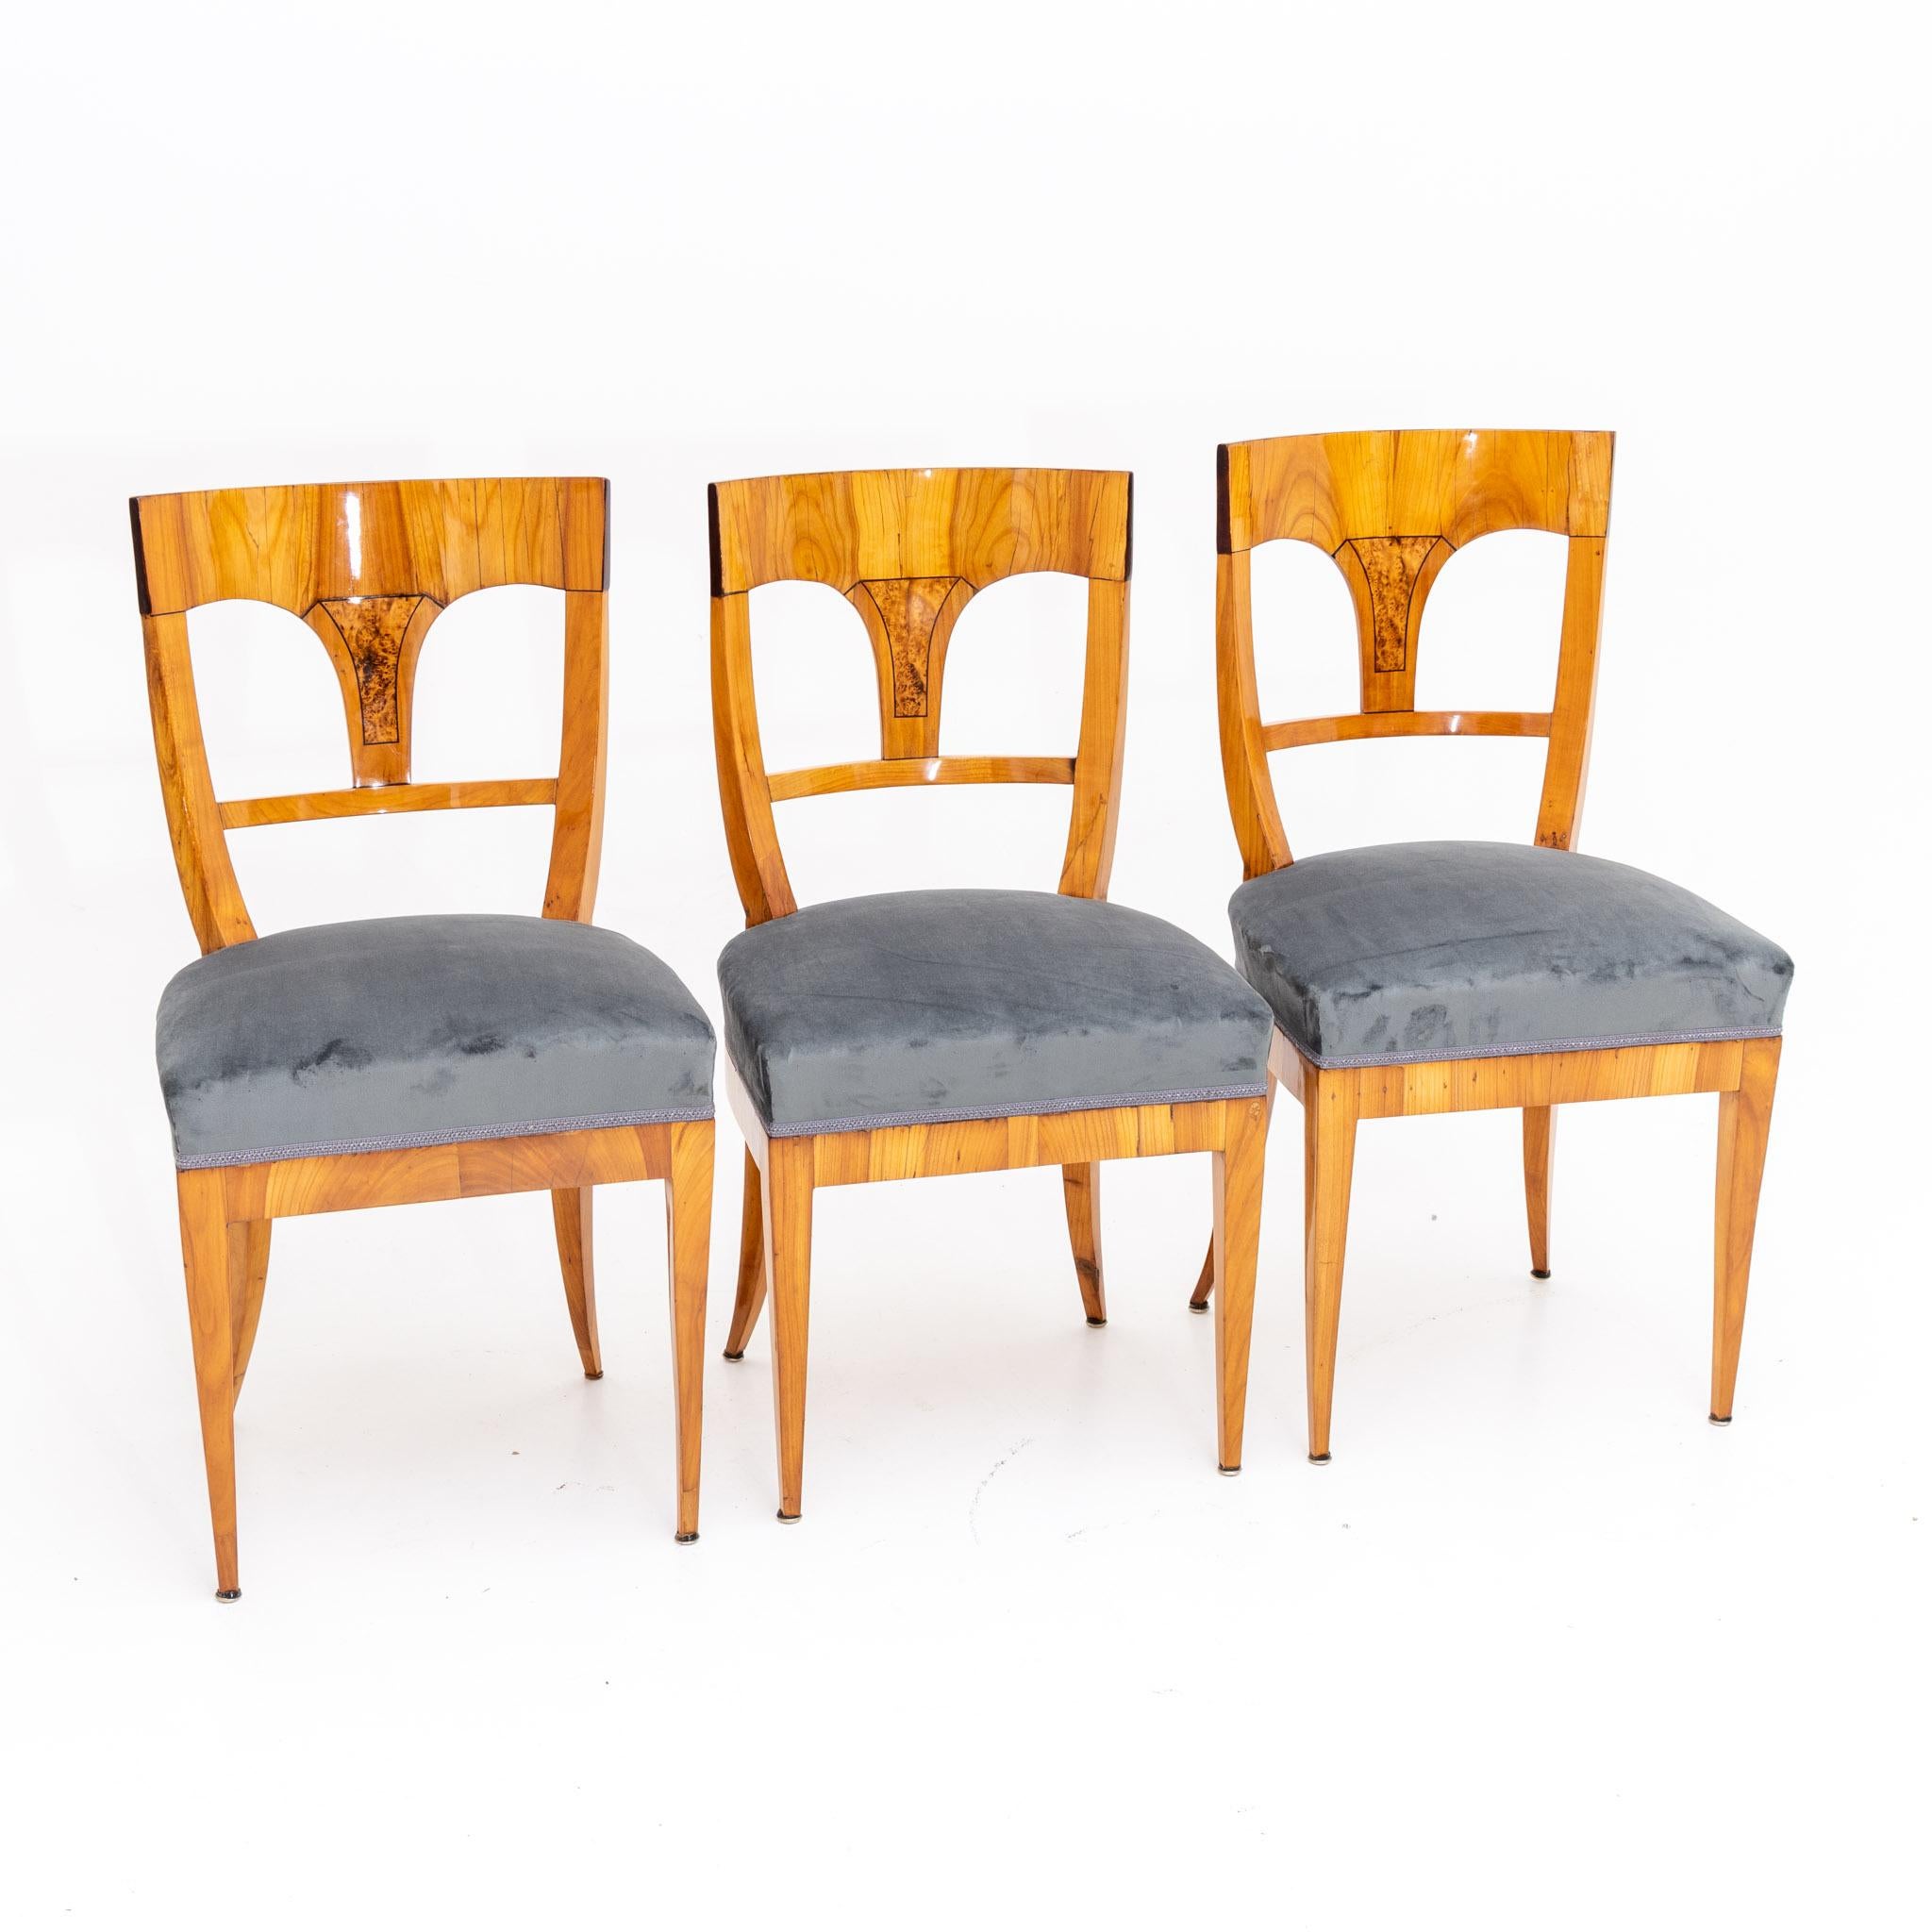 Cherry Biedermeier Chairs, circa 1820